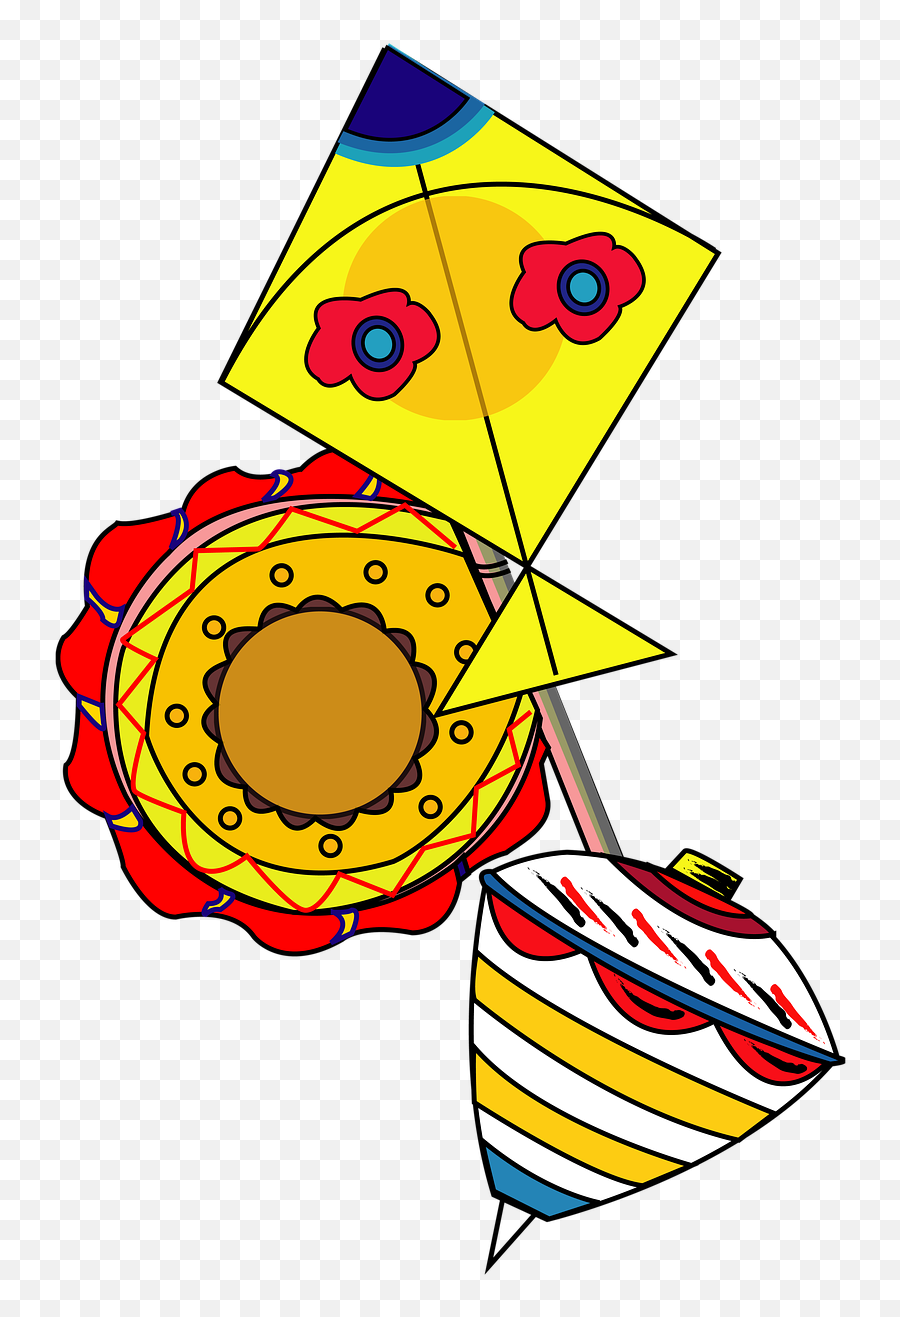 Kites Top Fan Toy Game - Original Kite Emoji,Japanese Doll Emoji